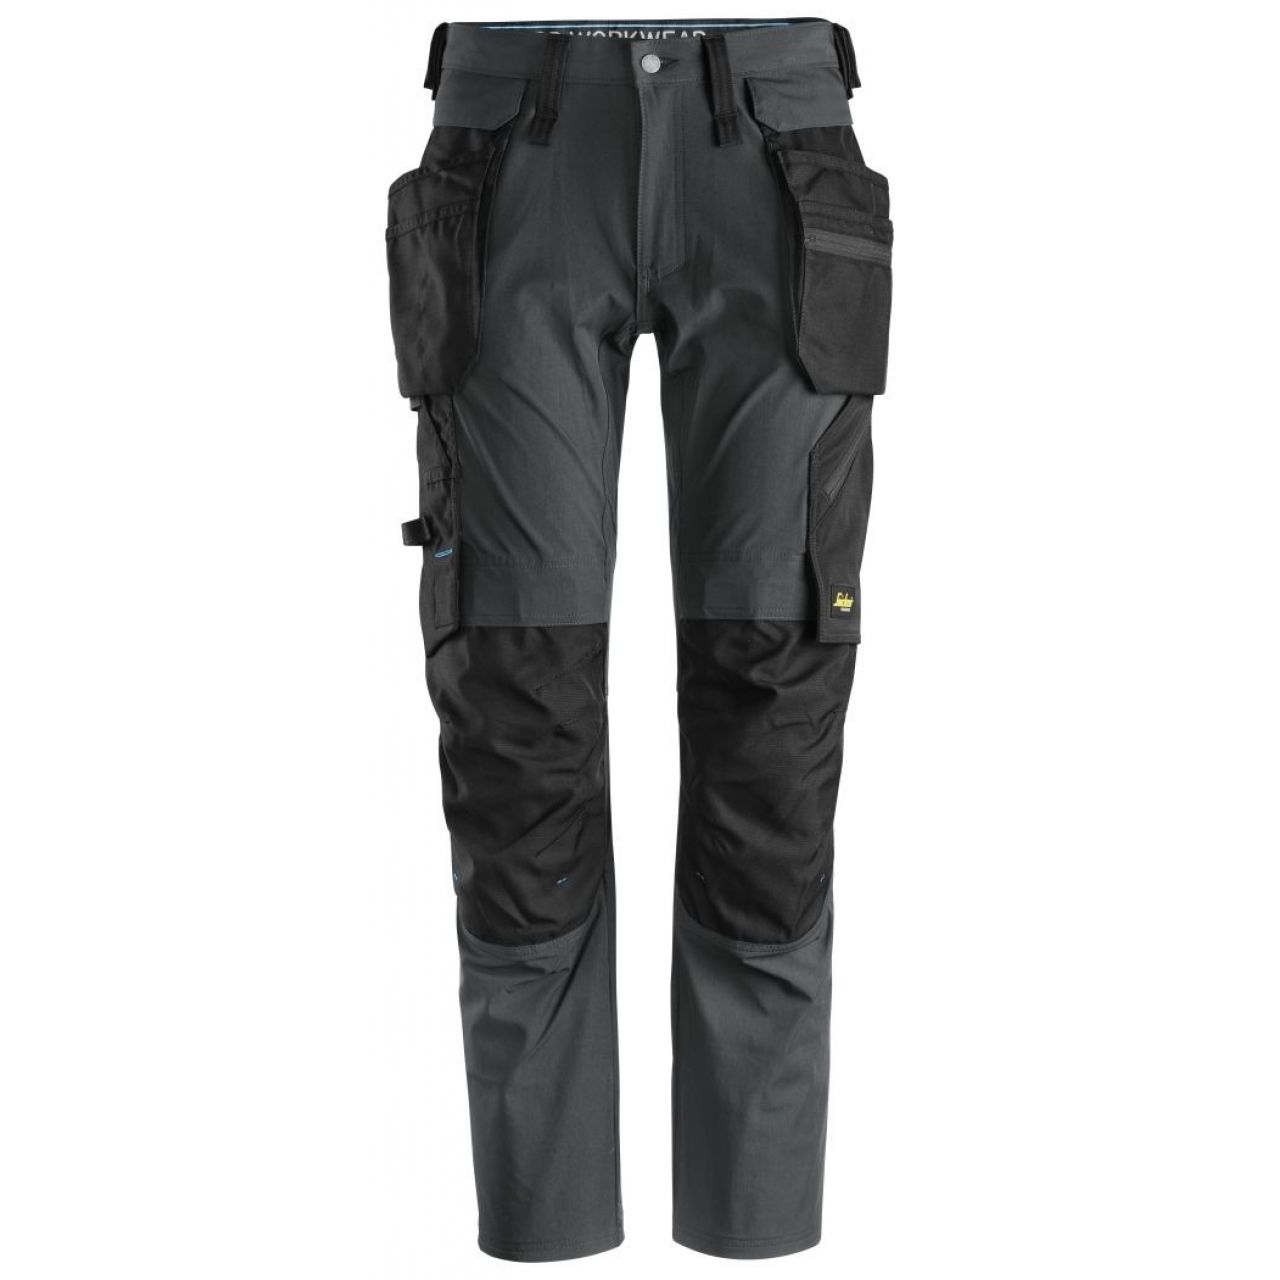 Pantalon + bolsillos flotantes desmontables LiteWork gris acero-negro talla 148